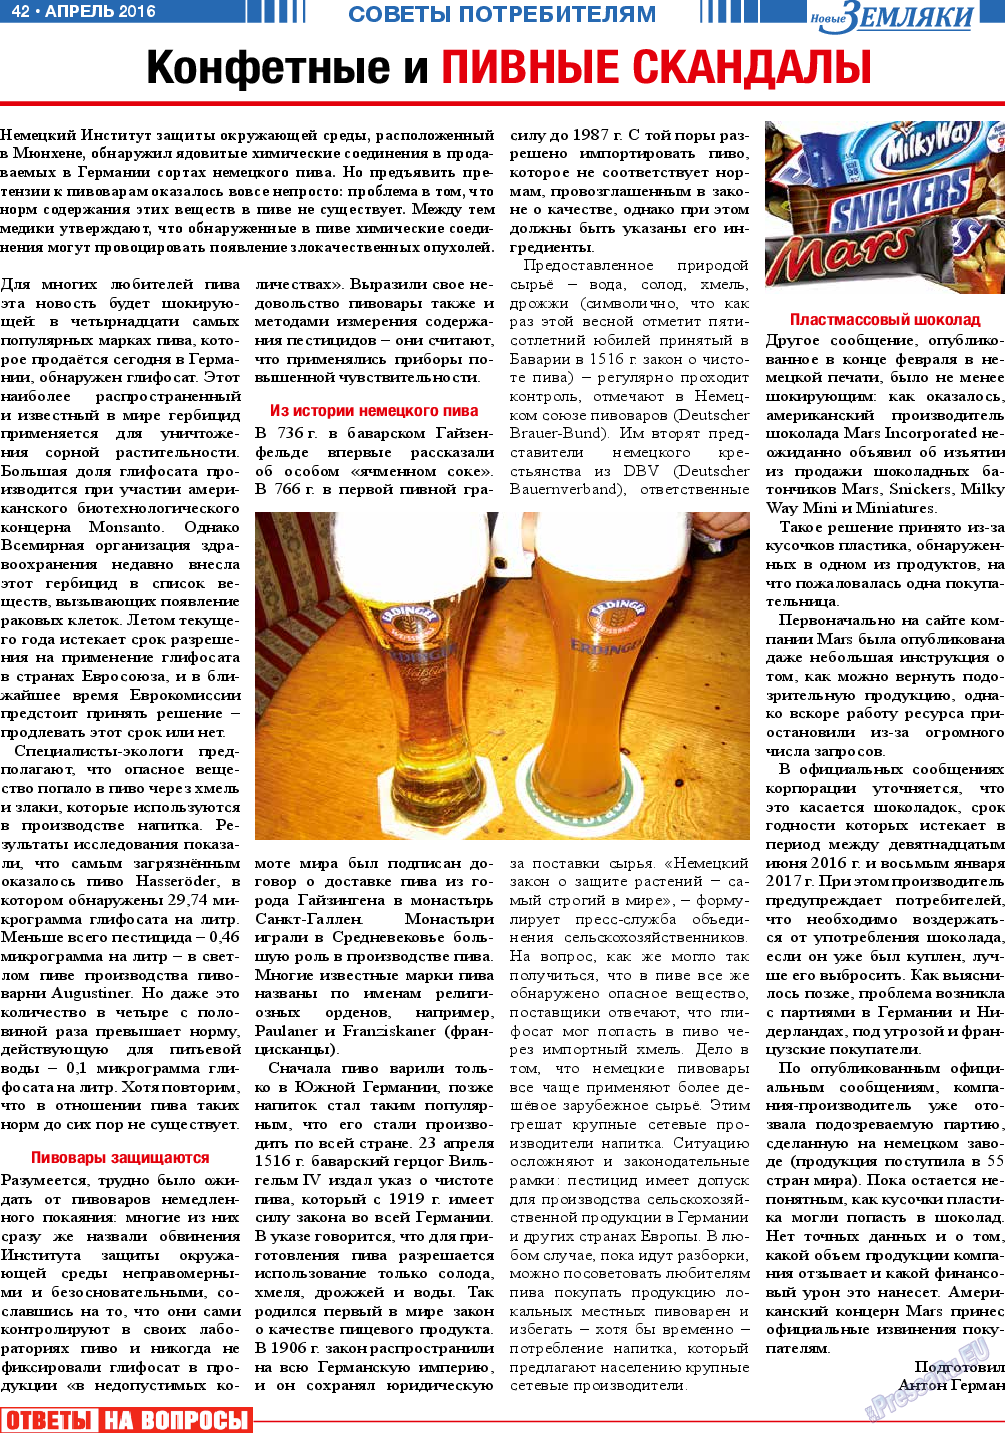 Новые Земляки, газета. 2016 №4 стр.42